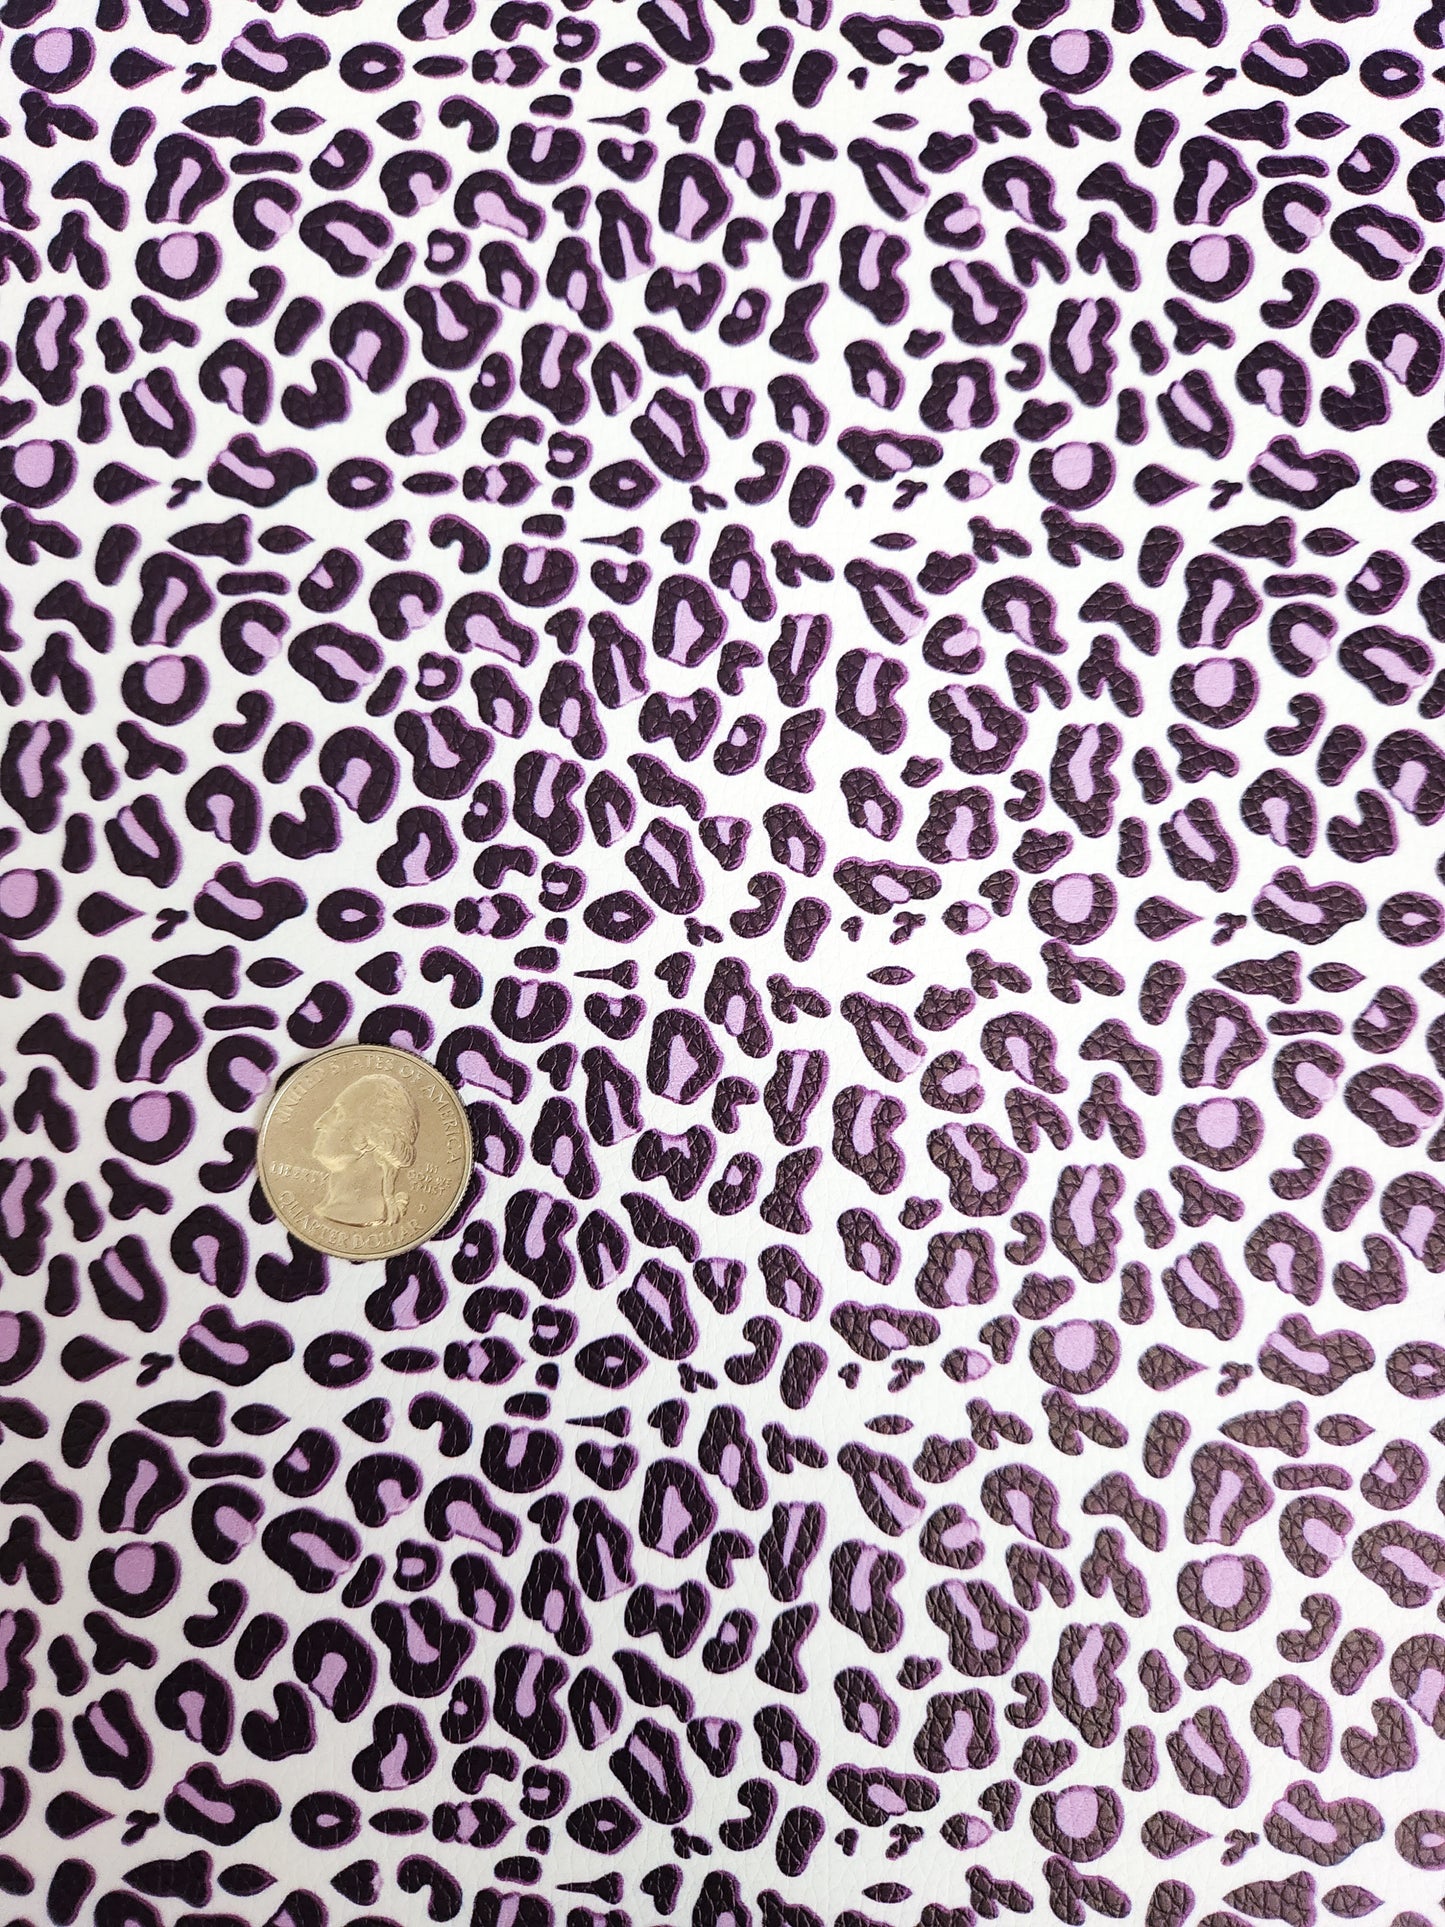 Purple White Cheetah Print 9x12 faux leather sheet